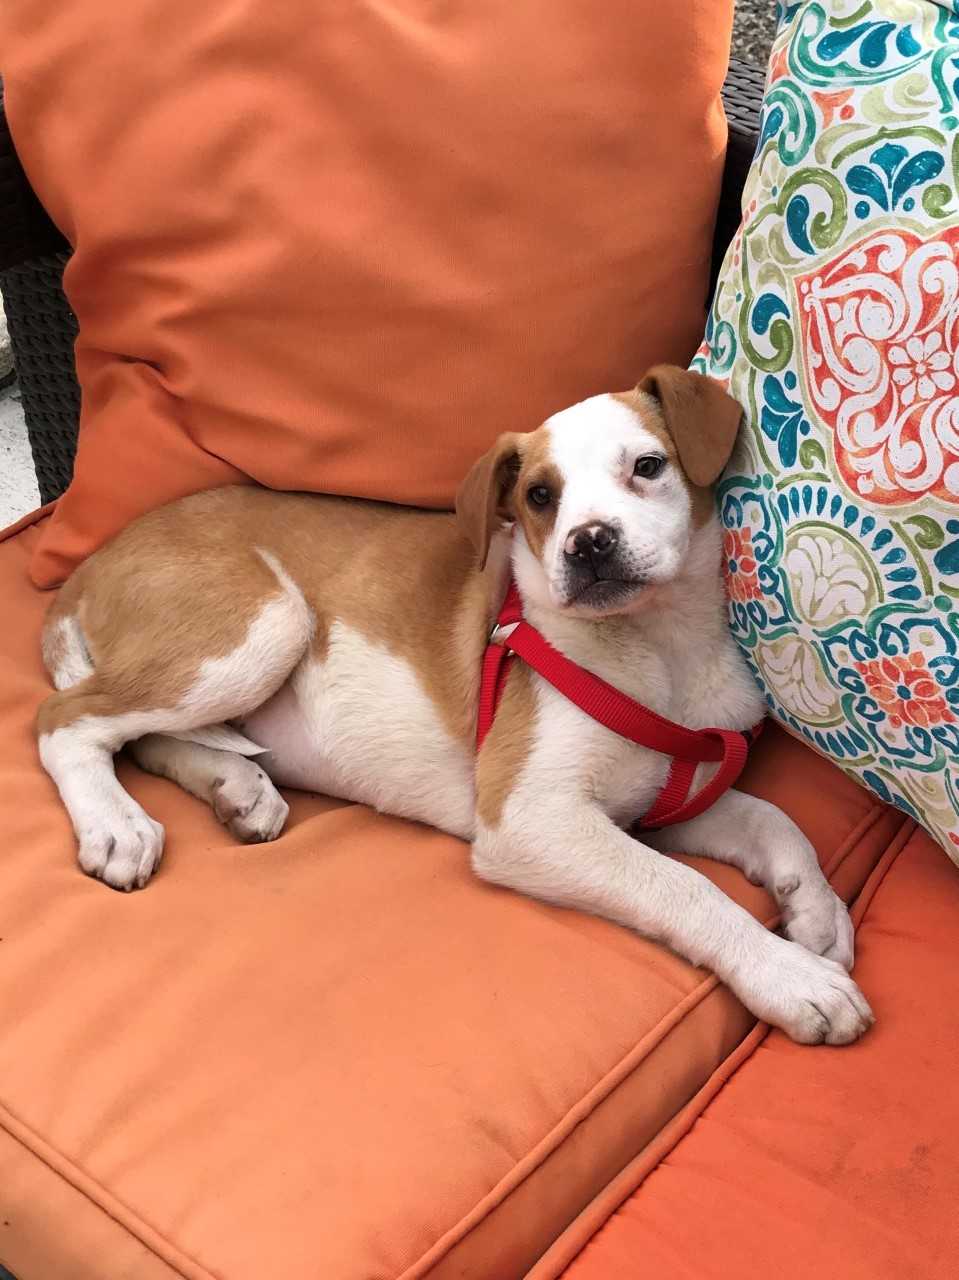 Cachorro de crianza marrón y blanco tendido en el sofá naranja